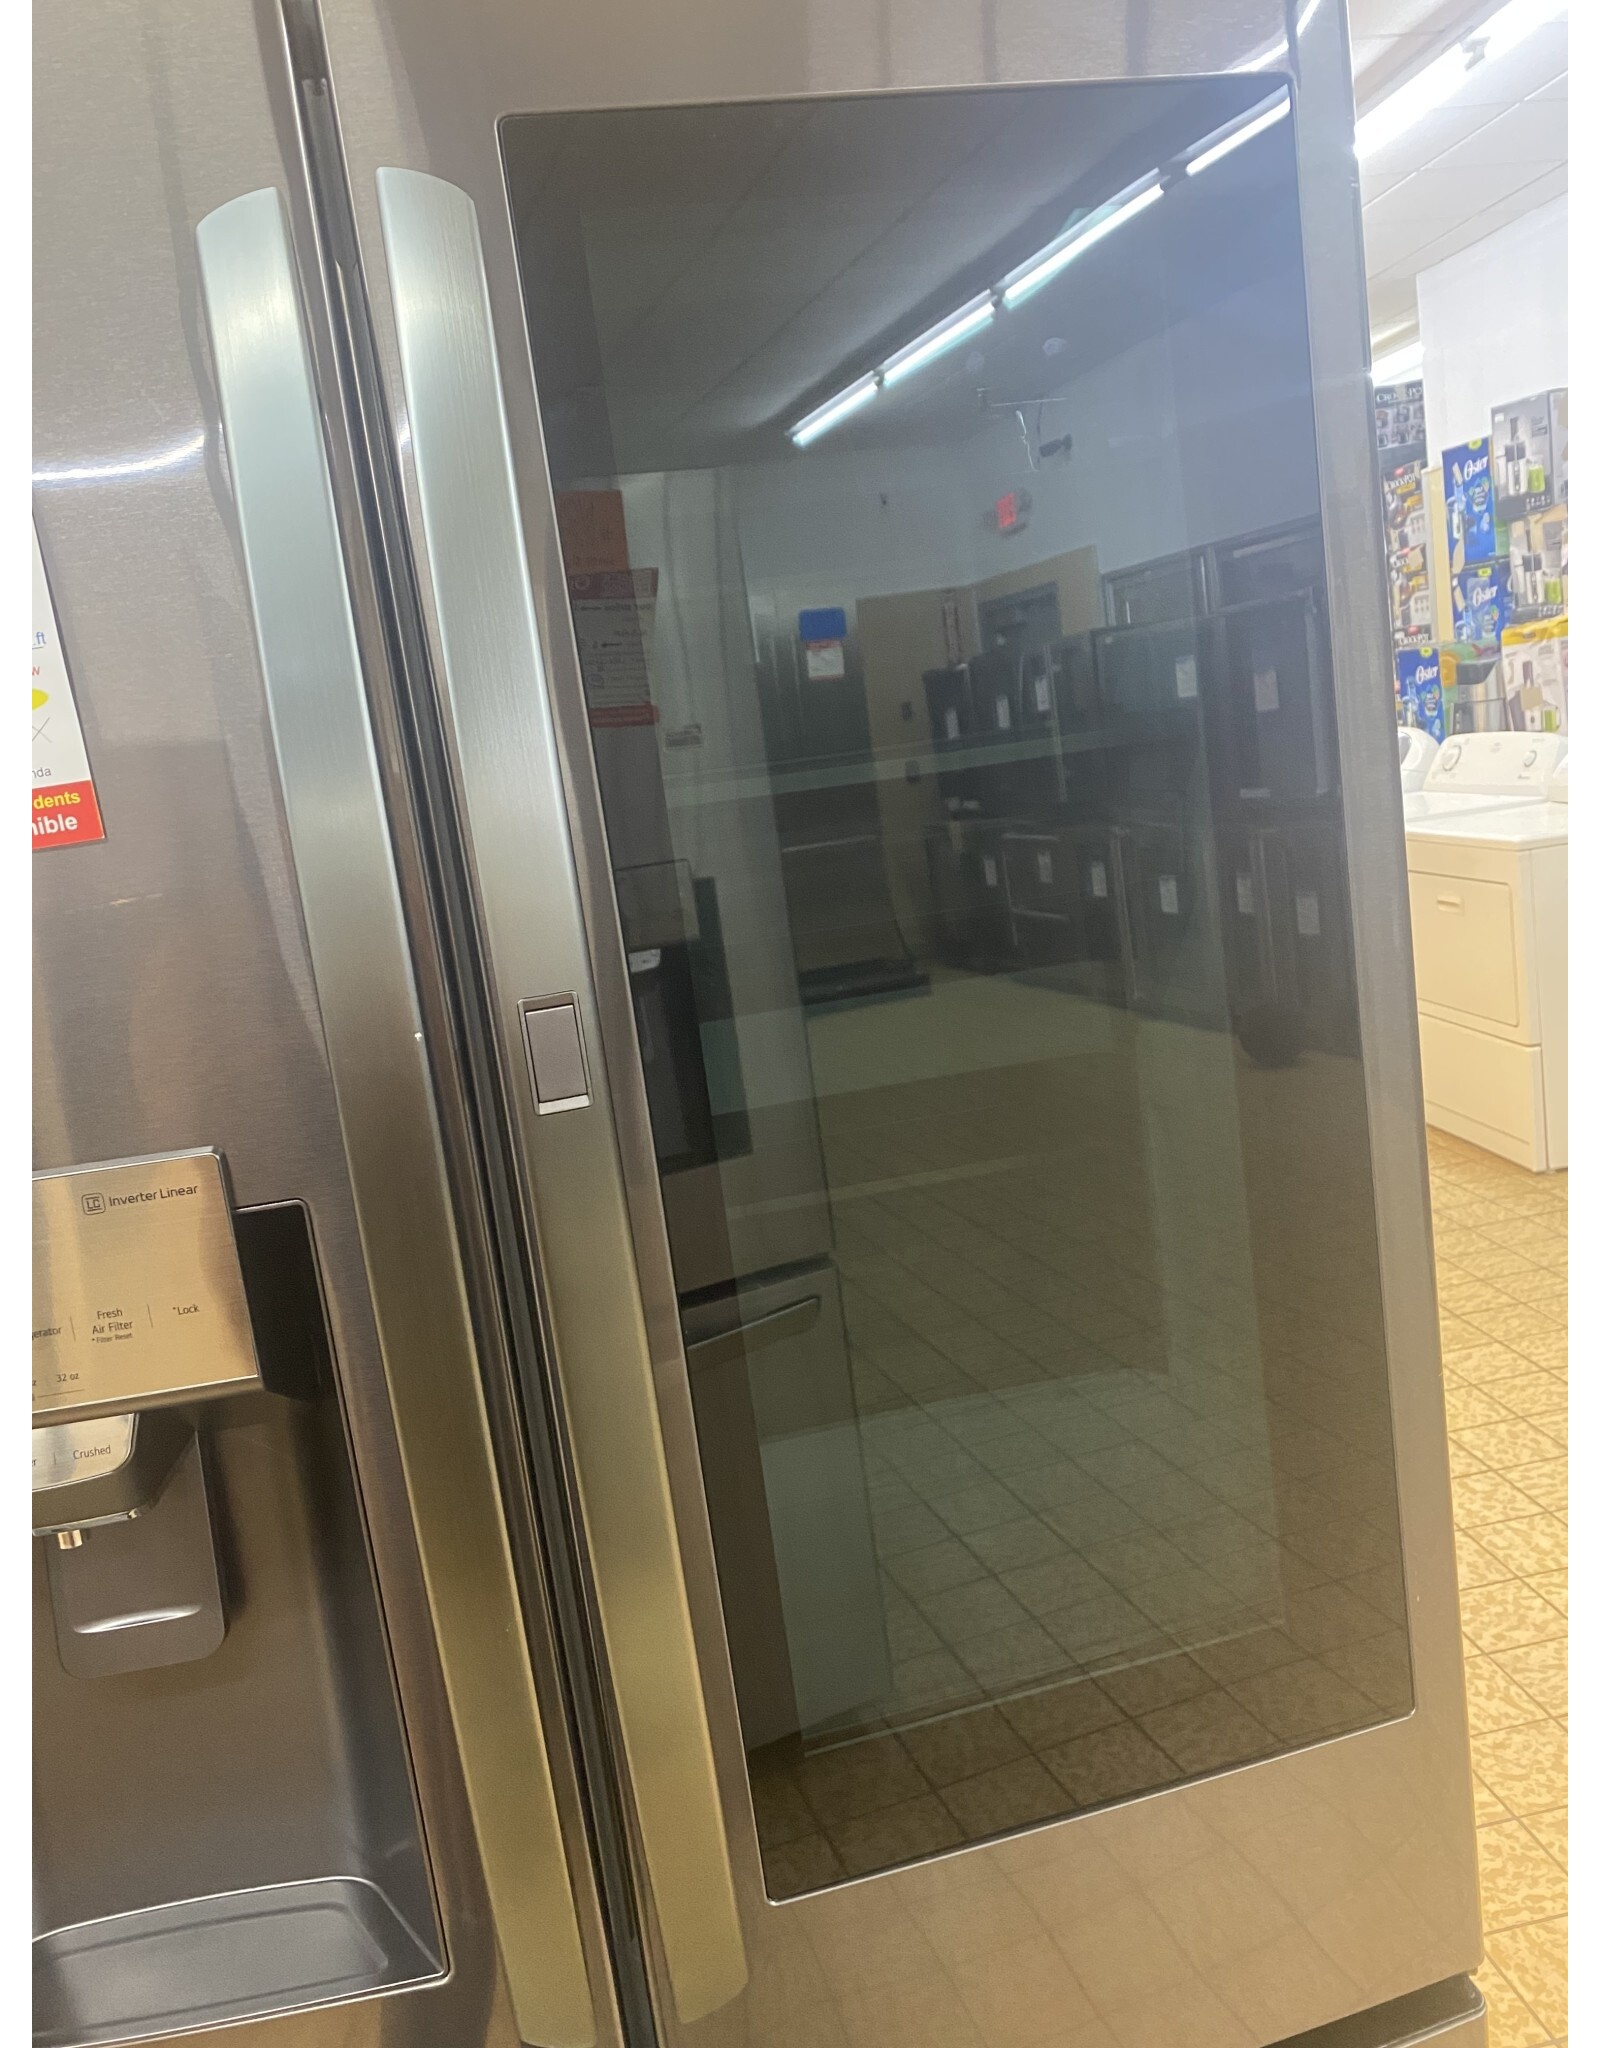 LG Electronics LRFVS3006D LG 29.7 cu. ft. French Door Refrigerator, InstaView Door-In-Door, Dual Ice w/ Craft Ice in PrintProof Black Stainless Steel